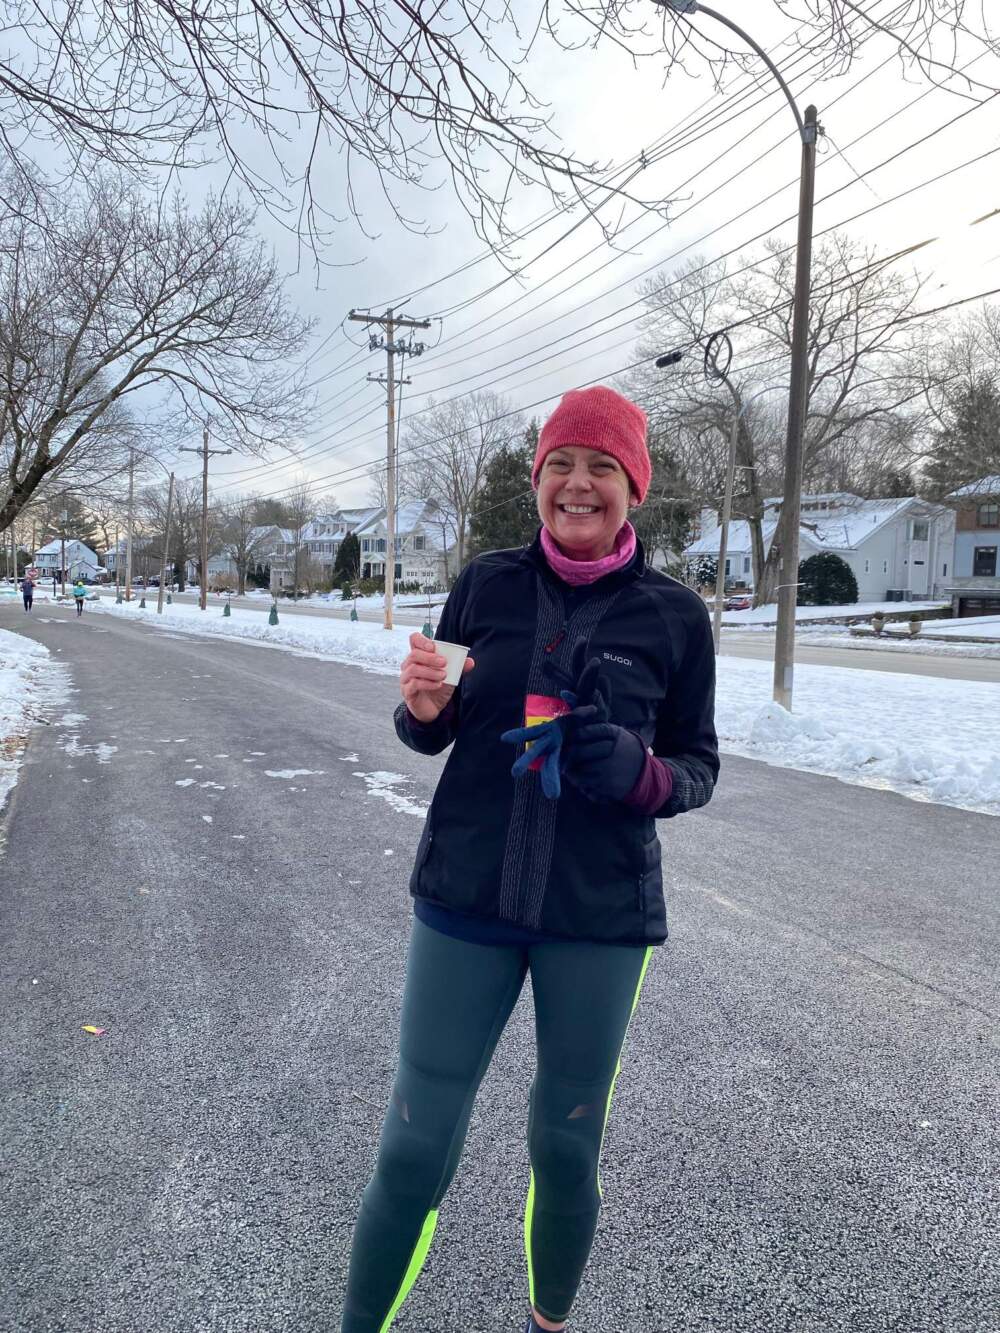 The author training through the Boston winter, for the Boston Marathon. (Courtesy Barbara Moran)